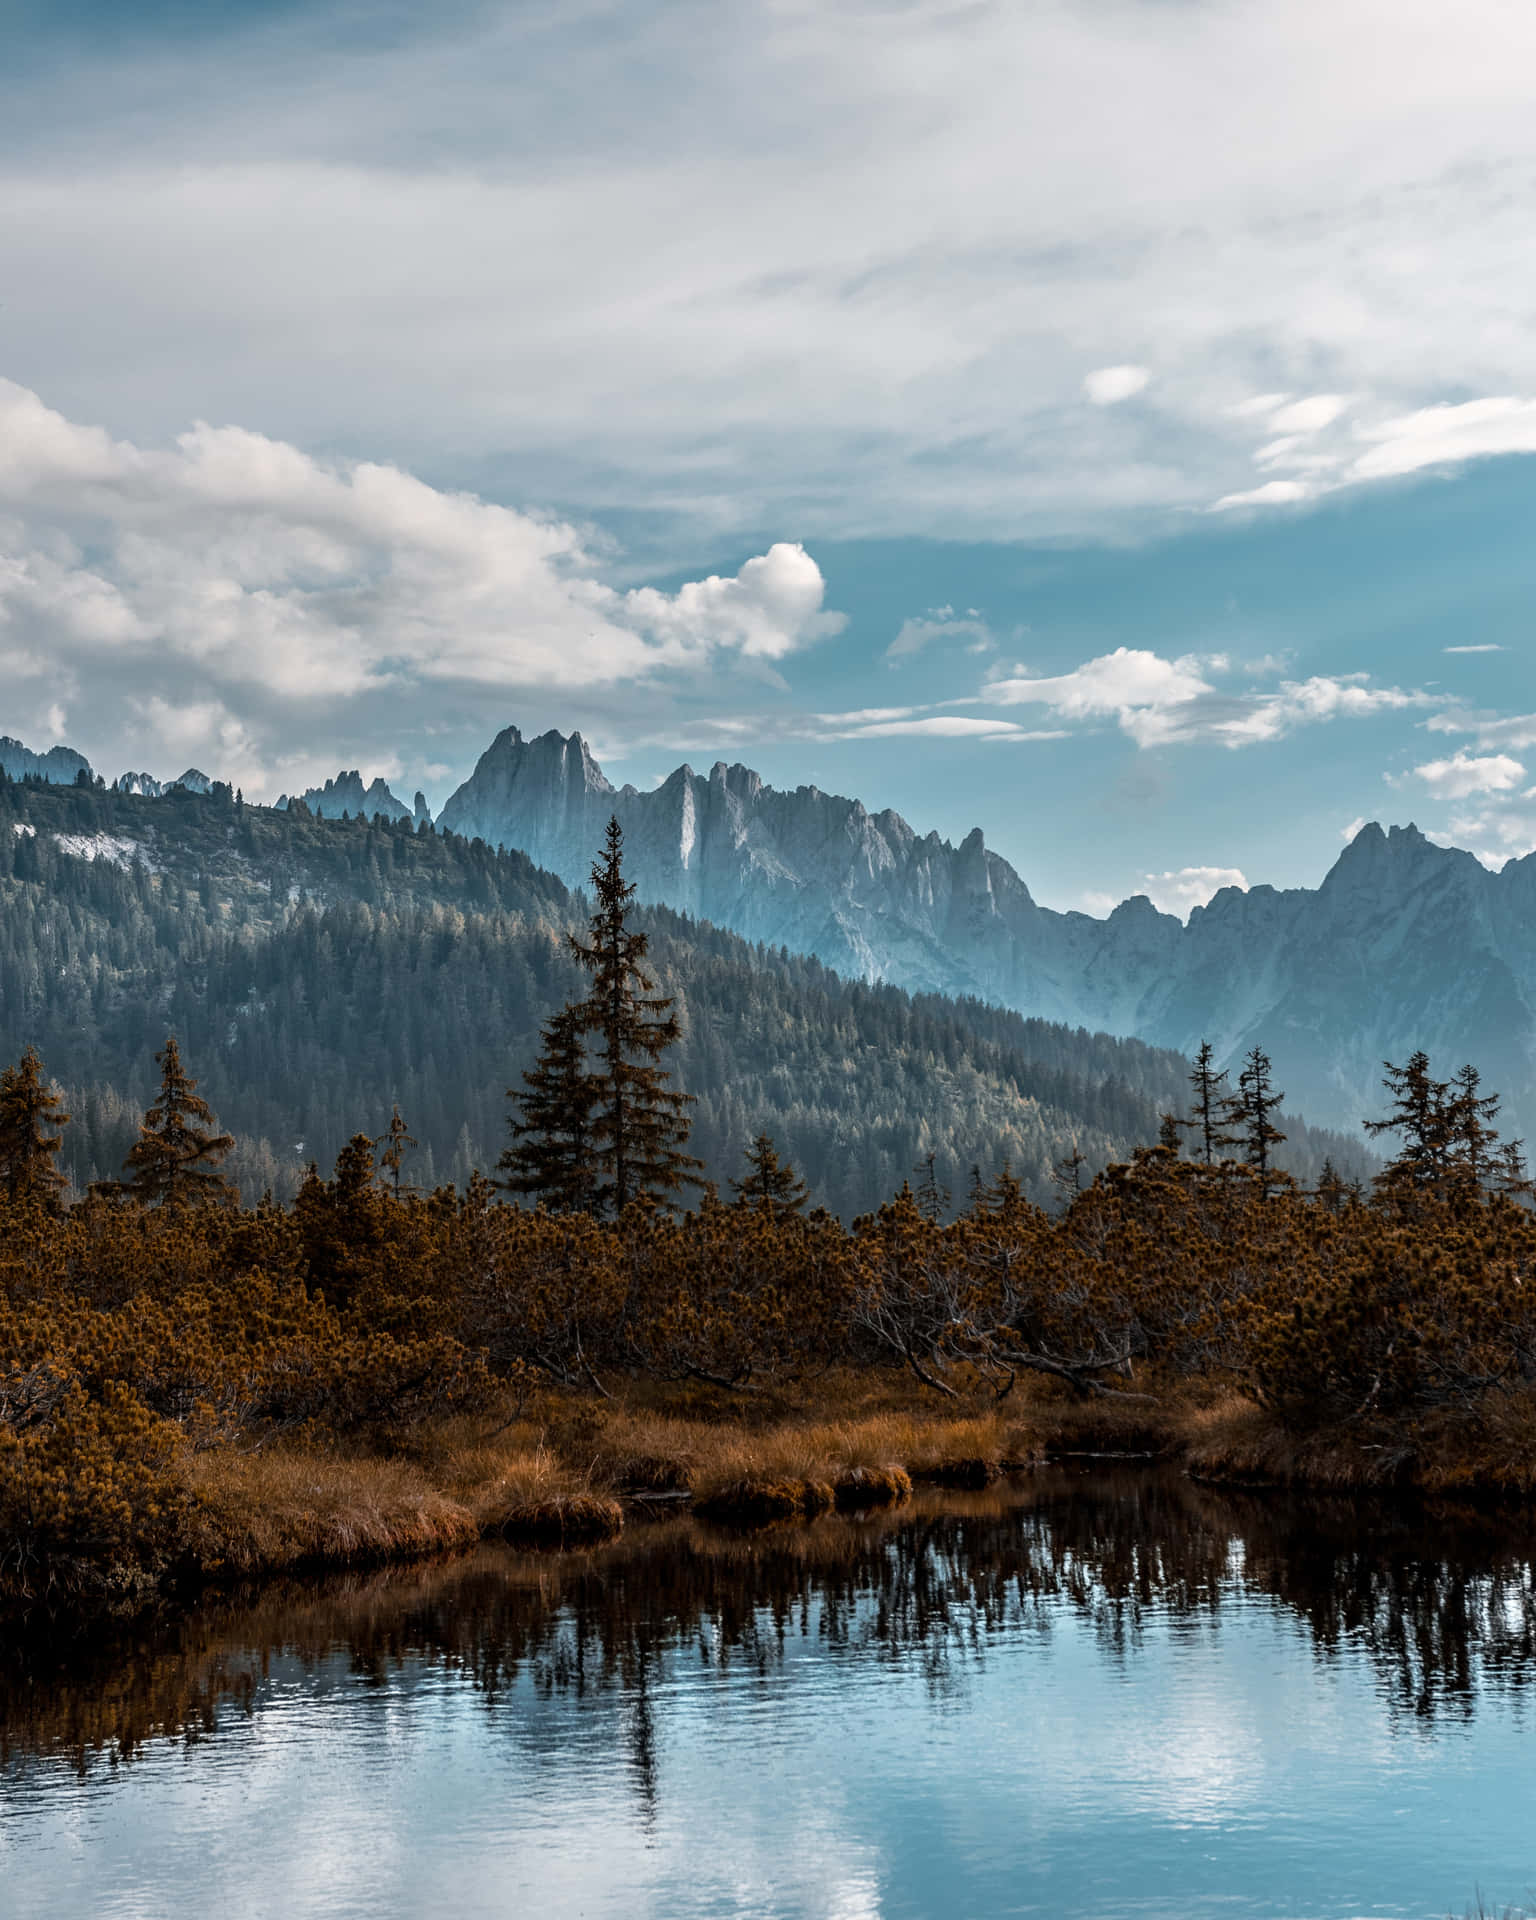 Respiraprofundamente Y Disfruta De La Majestuosa Belleza De Este Lago De Montaña Fondo de pantalla